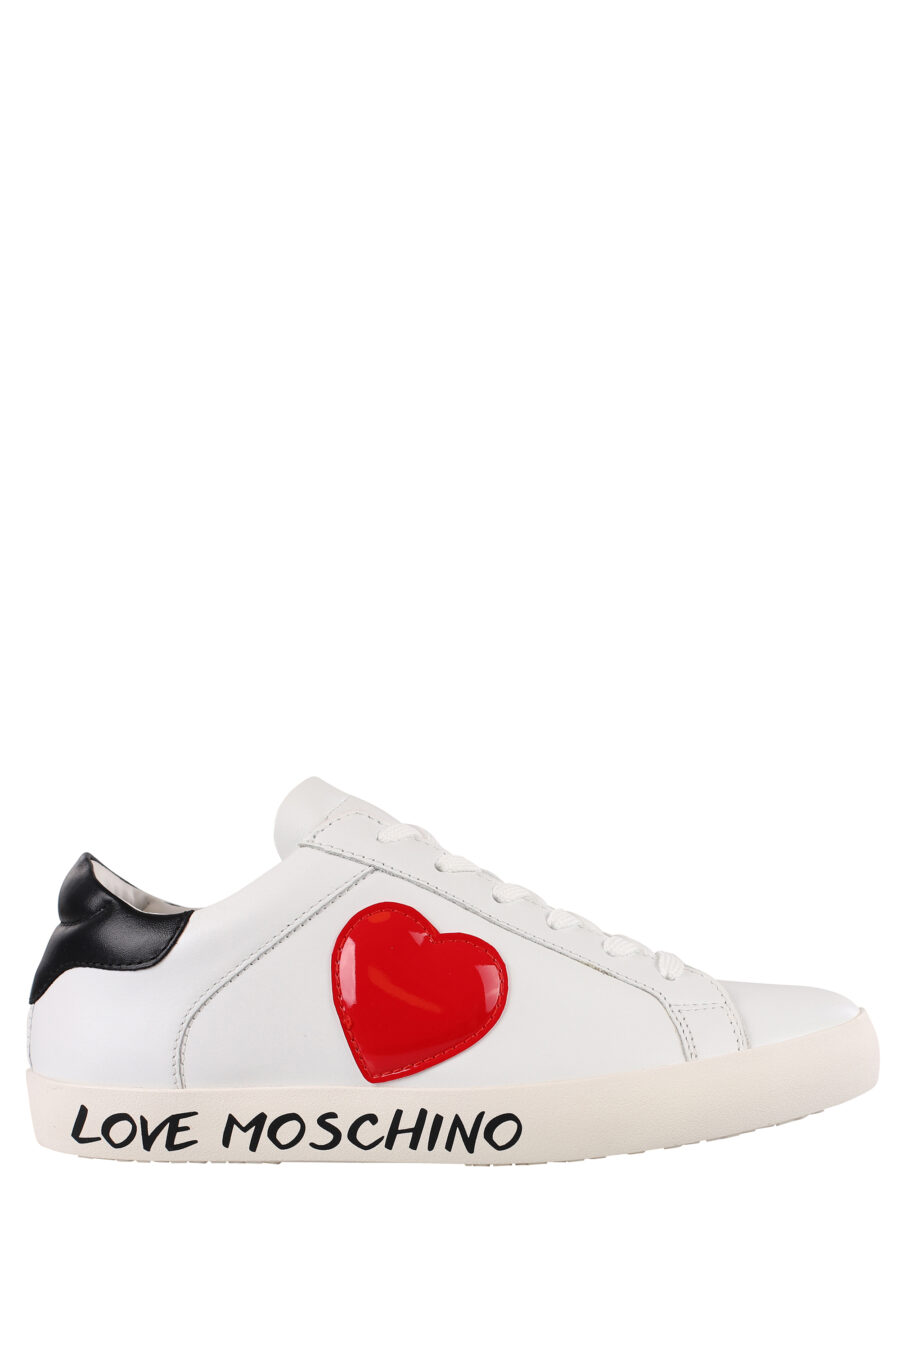 Zapatillas blancas con corazón rojo lateral y logo en suela - IMG 1206